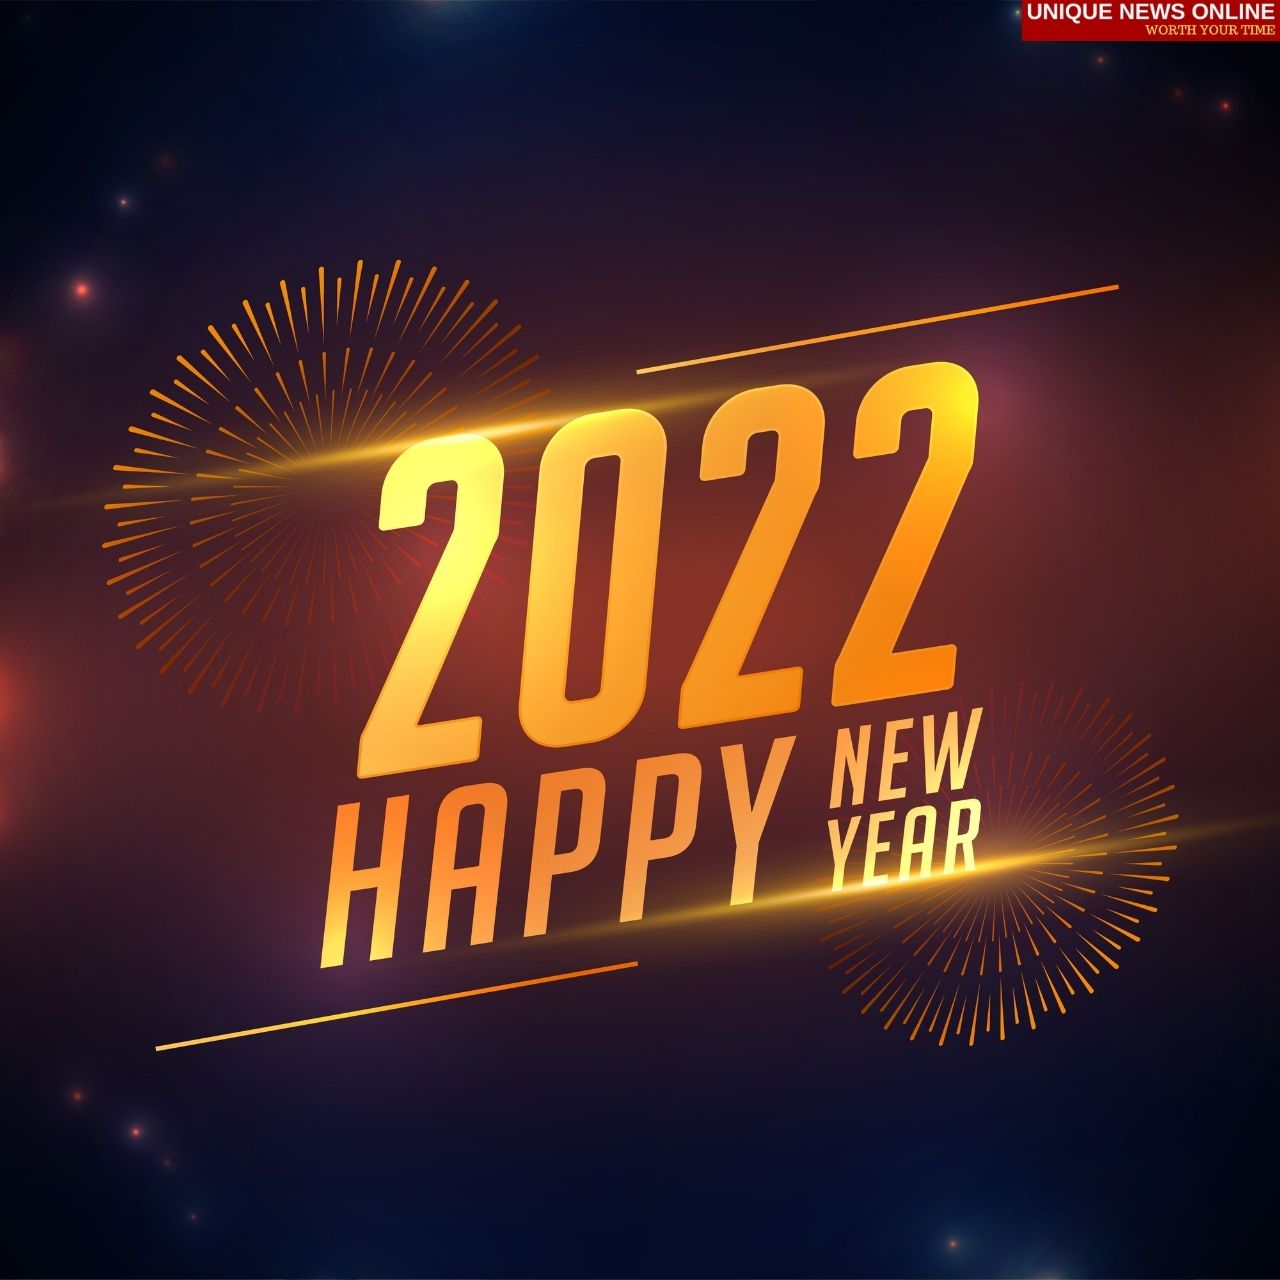 سنة جديدة سعيدة 2022 Instagram Captions، Facebook Status، DP، Twitter Messages، Pinterest Images، Cliparts، Phrase to Share